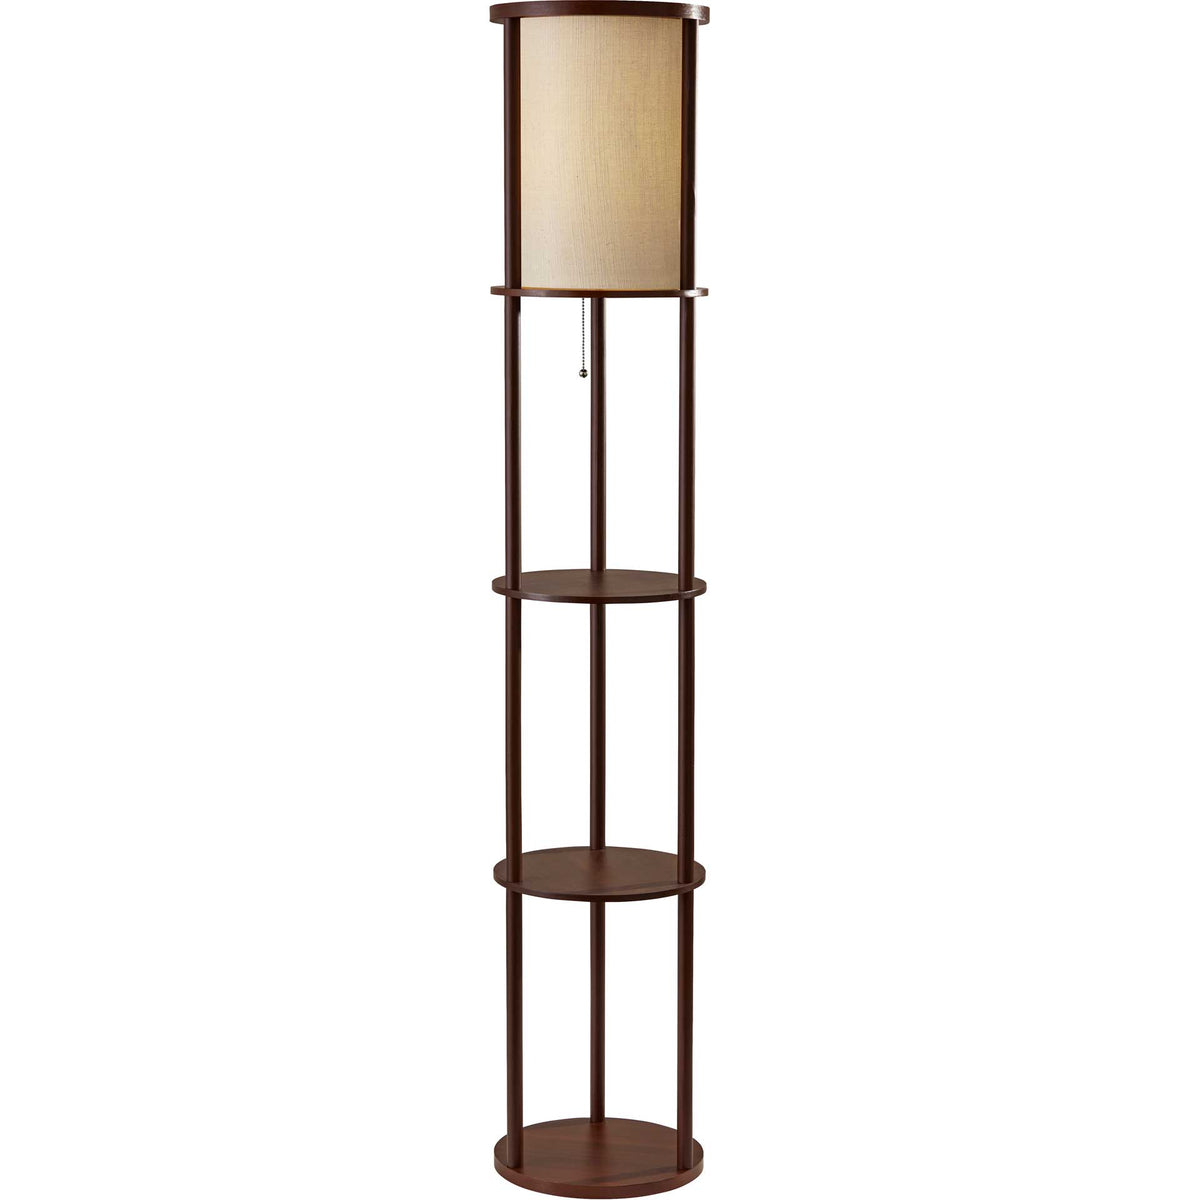 Stavanger Round Shelf Floor Lamp Walnut/Brown